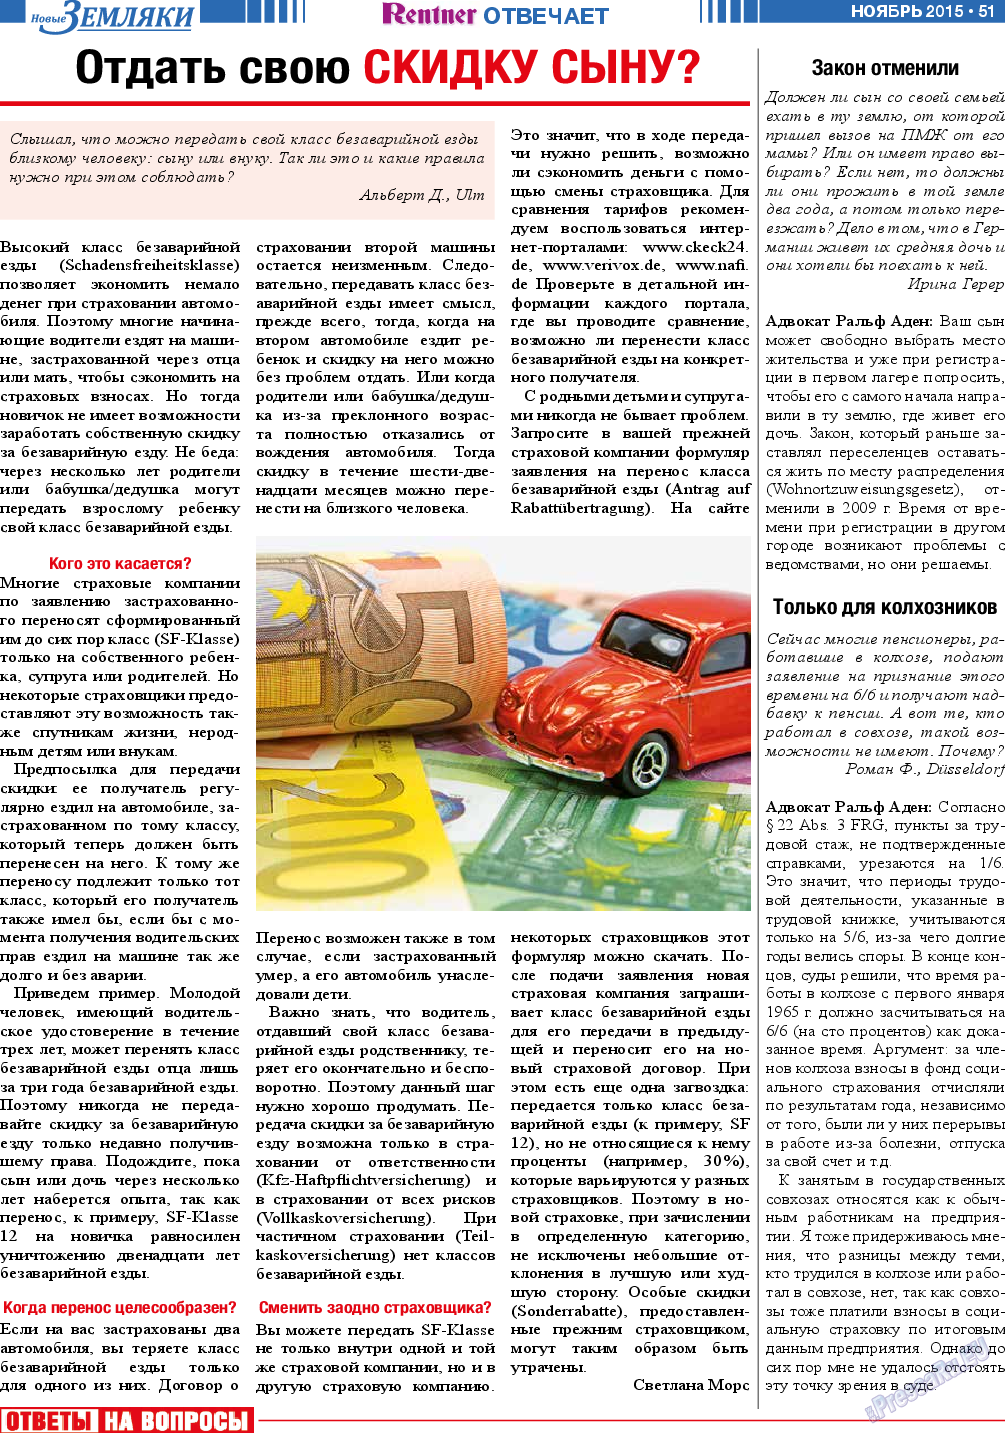 Новые Земляки (газета). 2015 год, номер 11, стр. 51